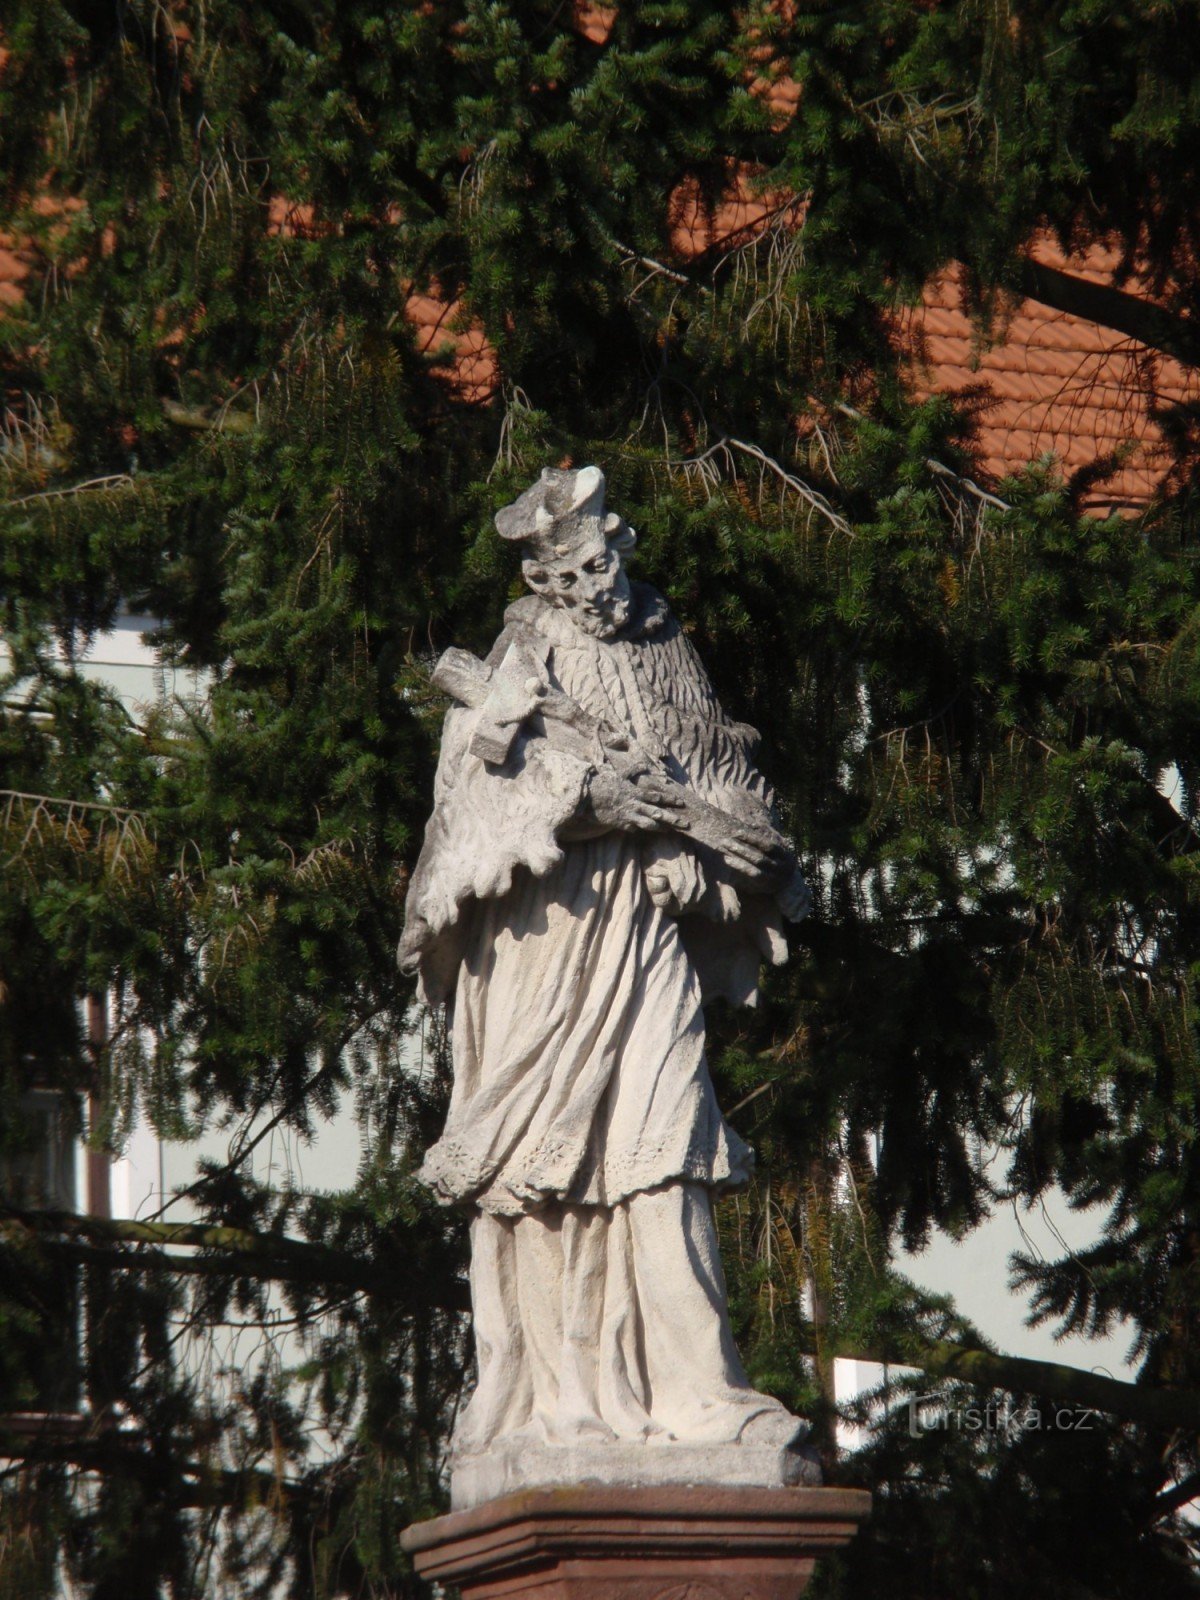 Statue of St. Jan Nepomucký in Velká Bíteš